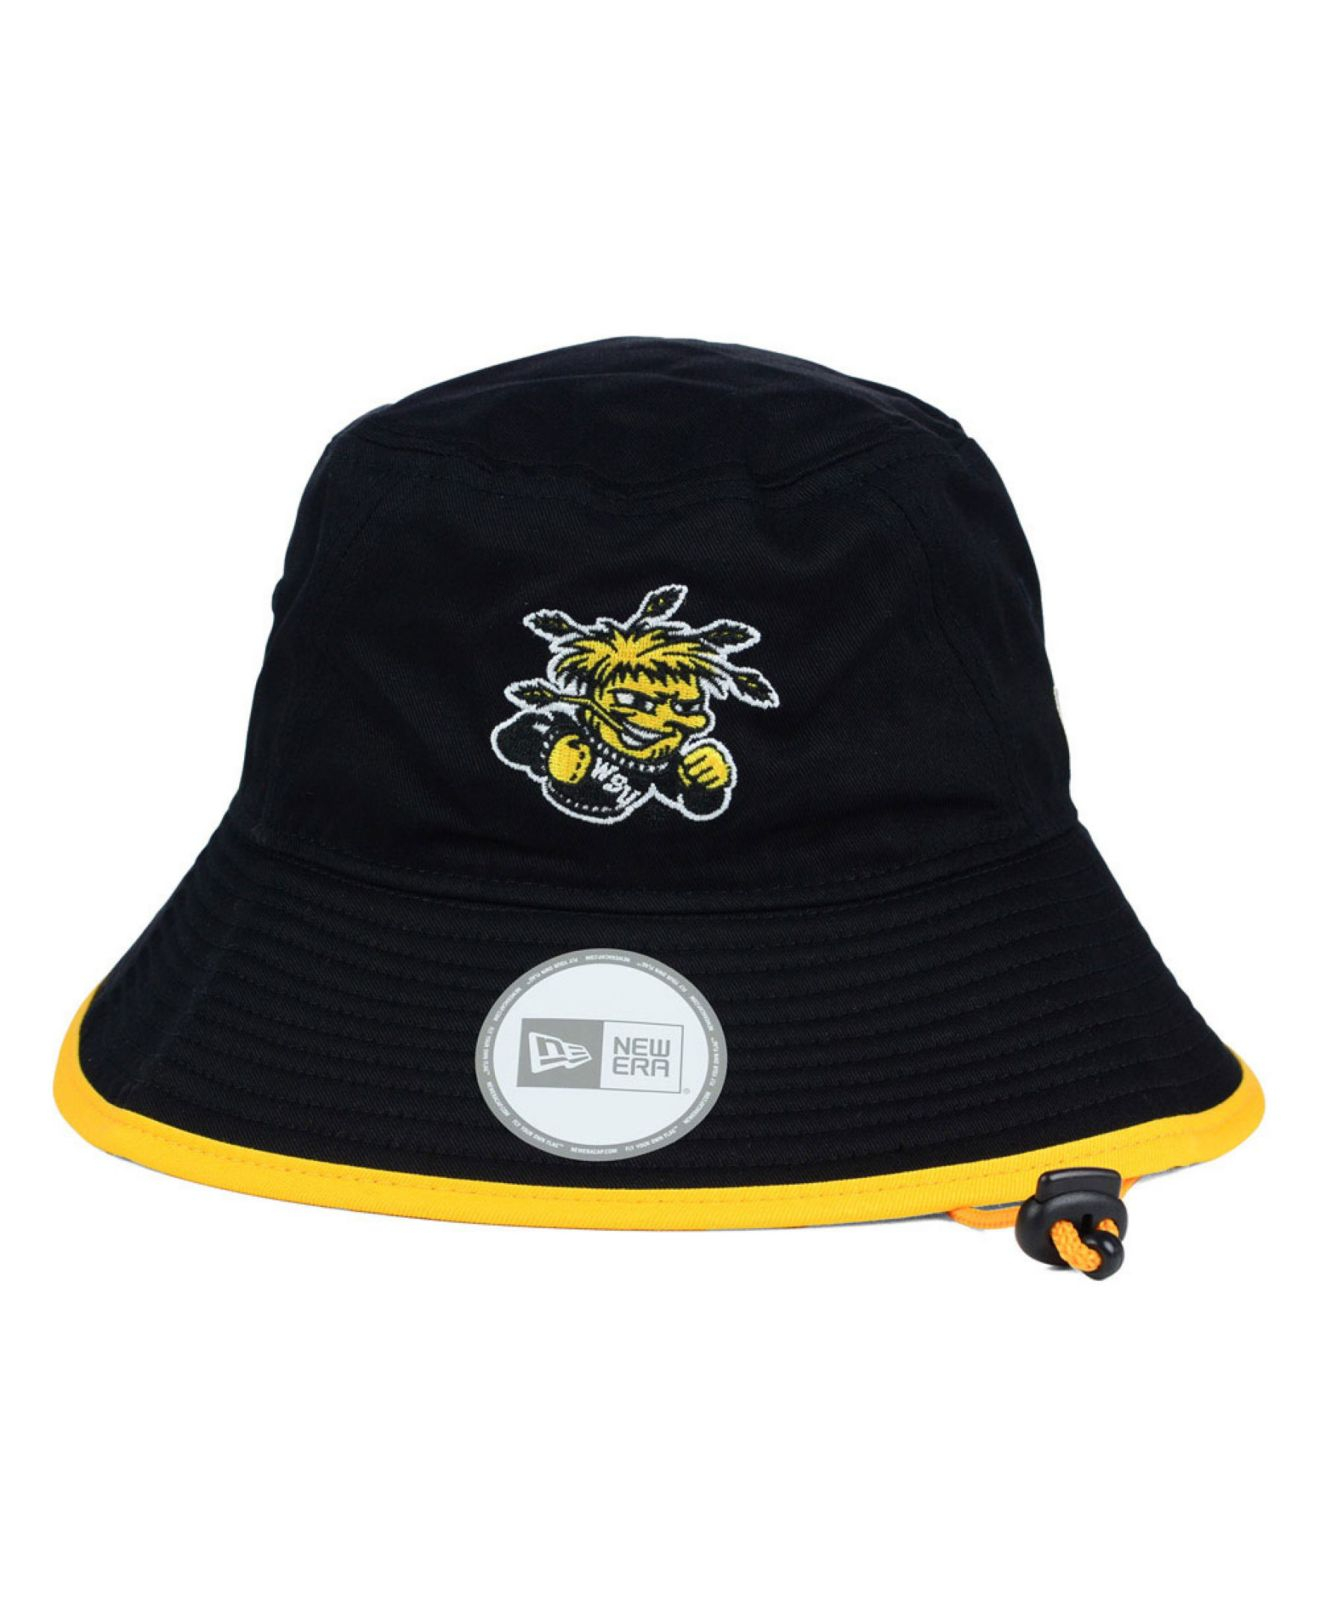 KTZ Wichita State Shockers Tip Bucket Hat in Black for Men - Lyst